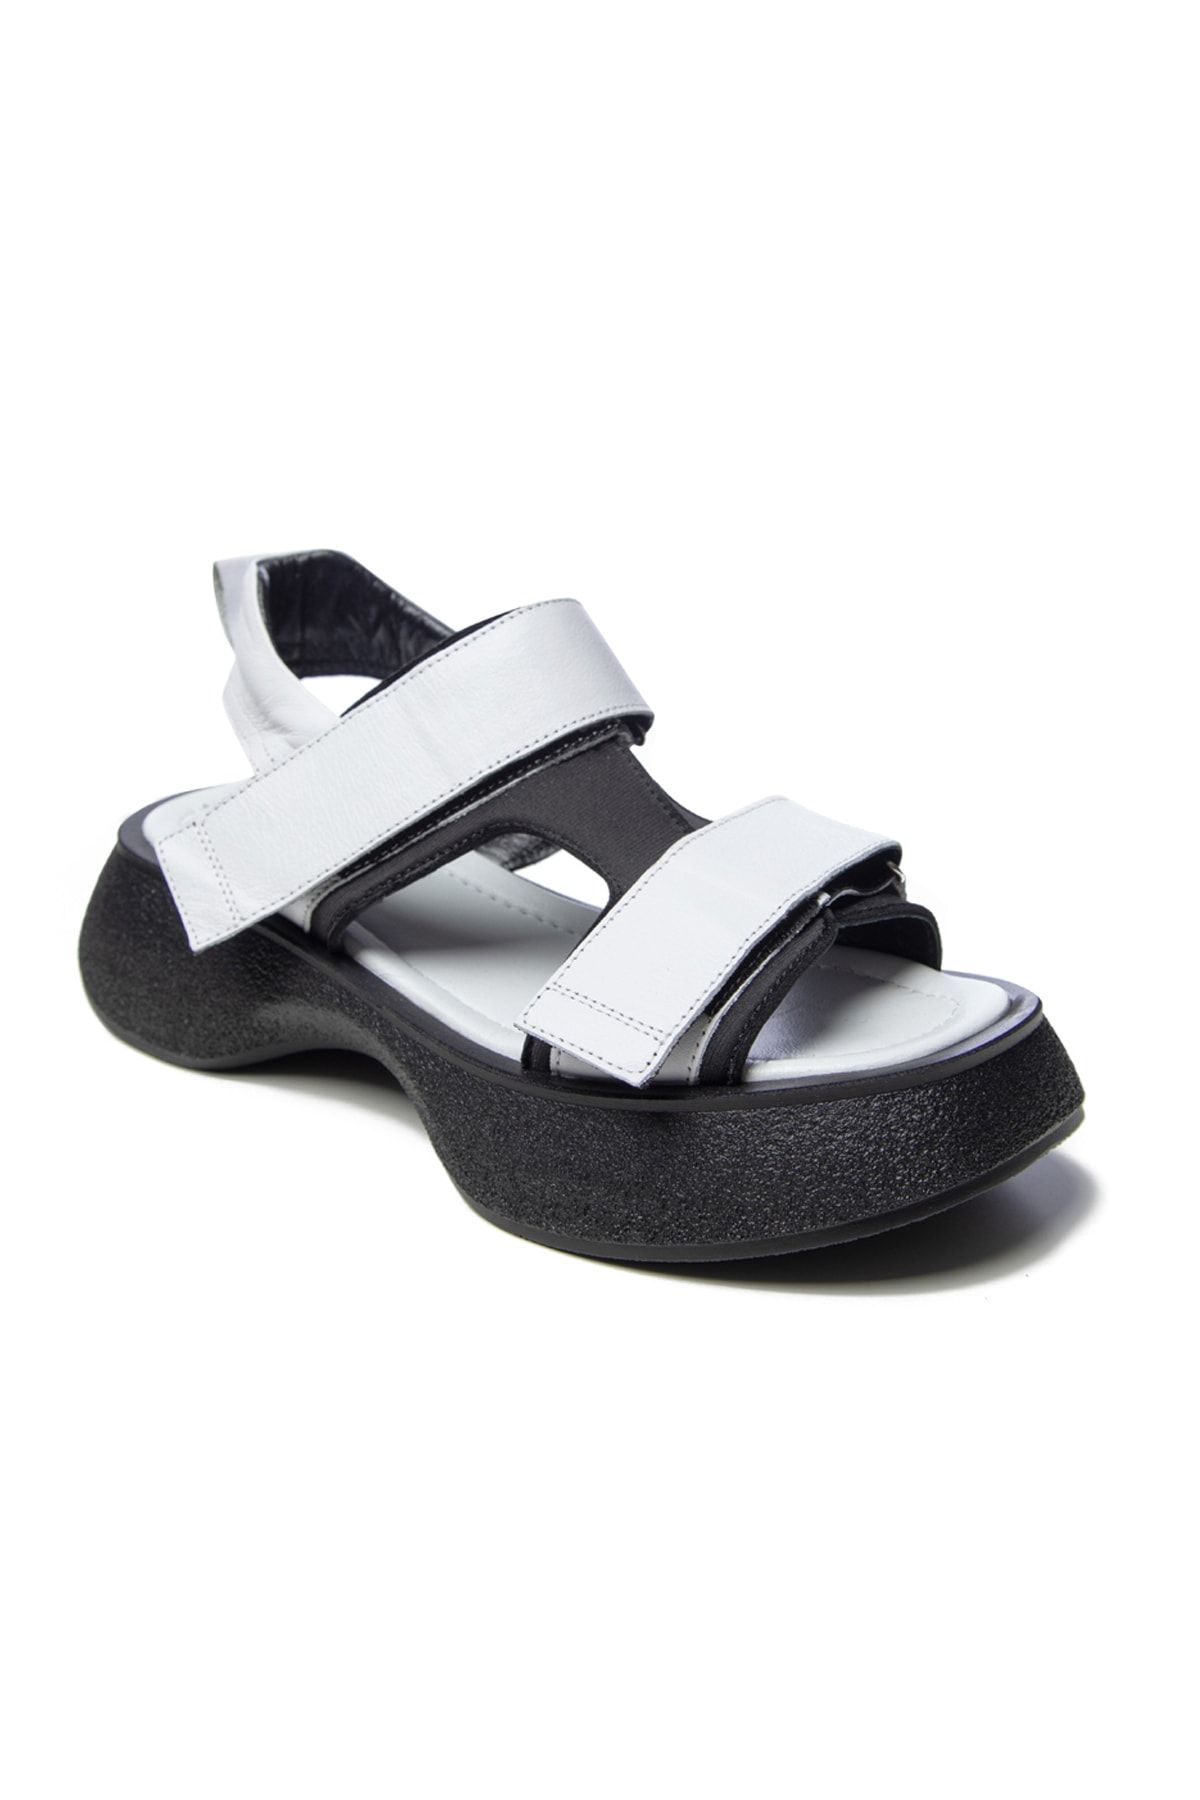 John May Kadın Sandalet Gtn-23552 Beyaz Siyah